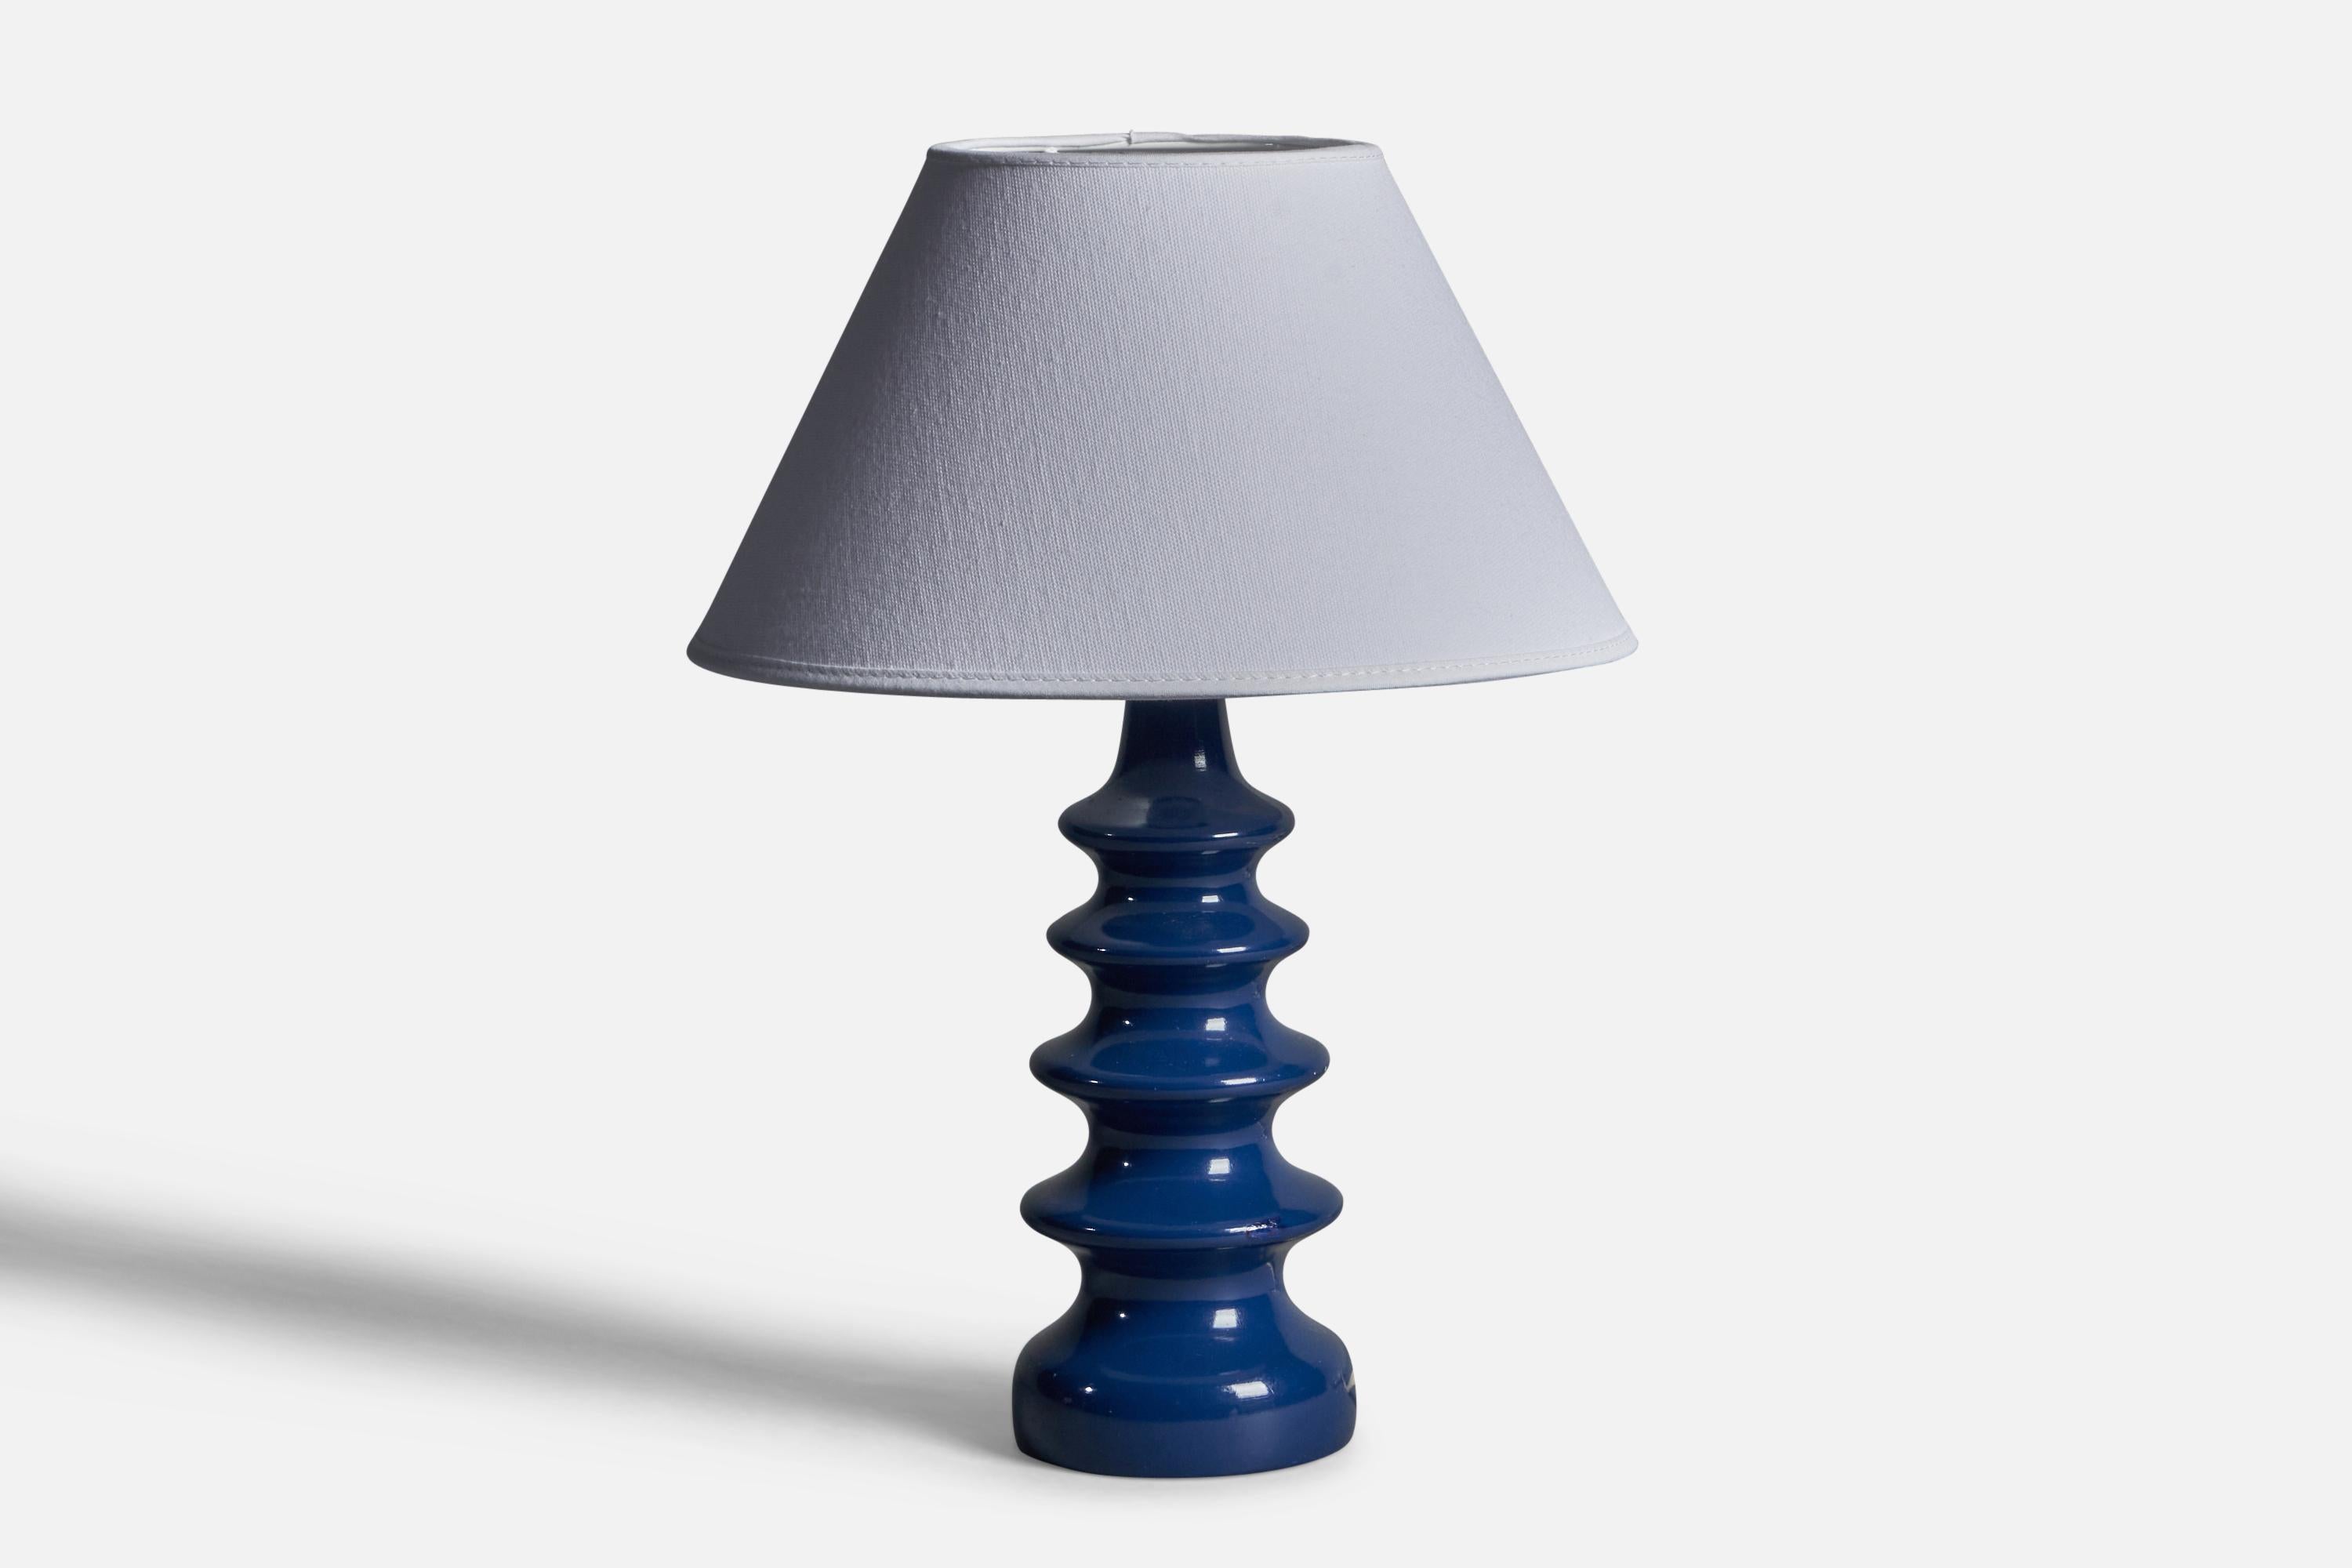 Lampe de table en bois peint en bleu, conçue et produite en Suède dans les années 1960.

Dimensions de la lampe (pouces) : 10.75